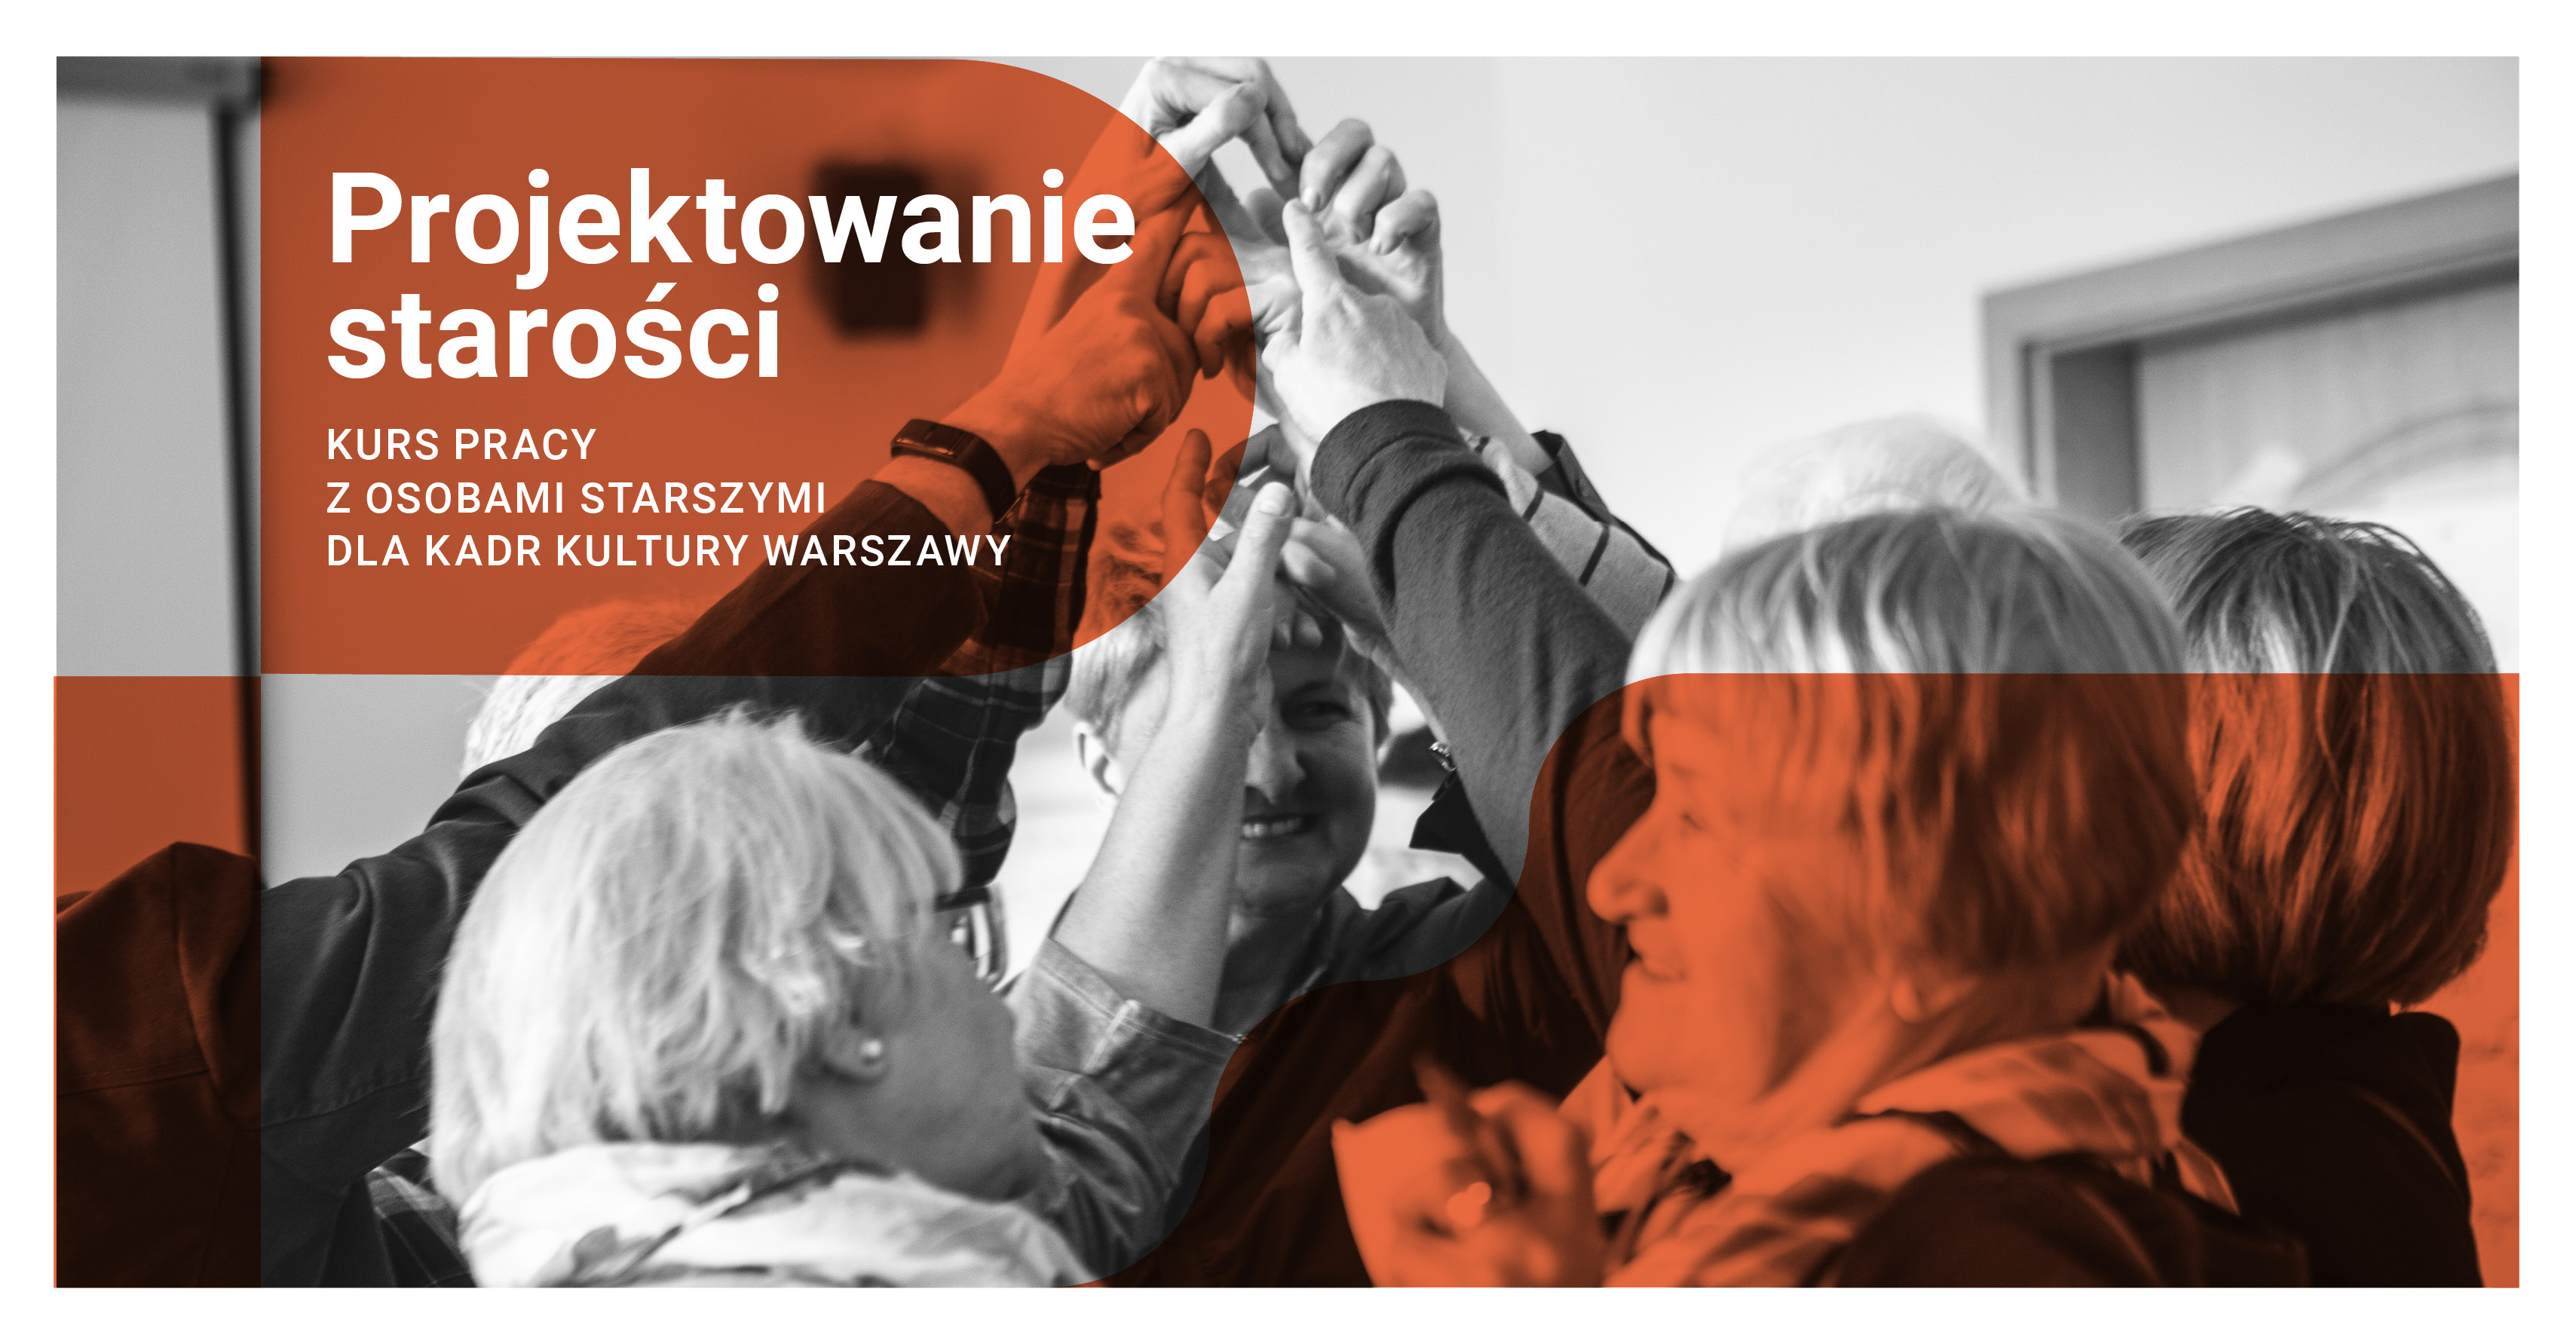 „Projektowanie starości” - kurs dla kadr kultury Warszawy o pracy z osobami starszymi